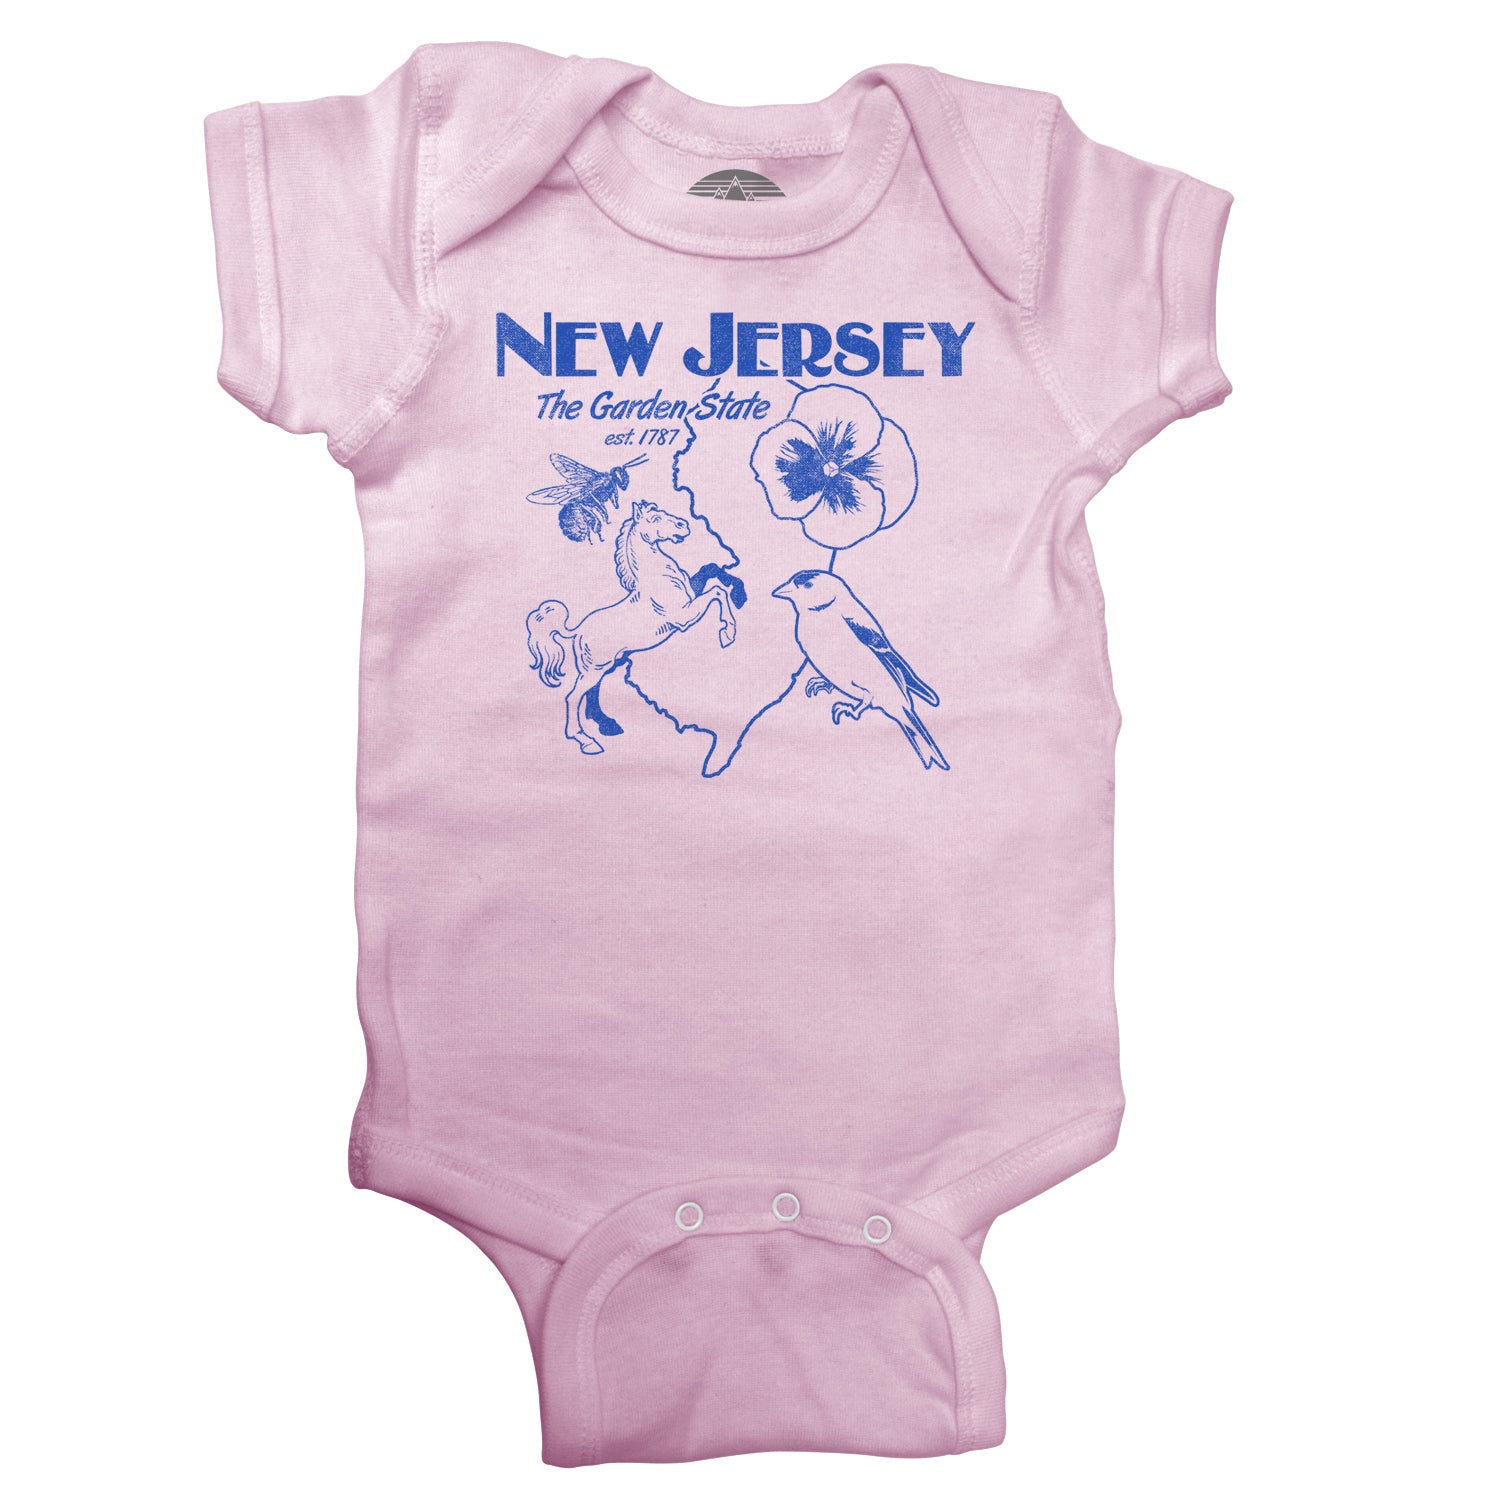 New Jersey Infant Bodysuit - Unisex Fit